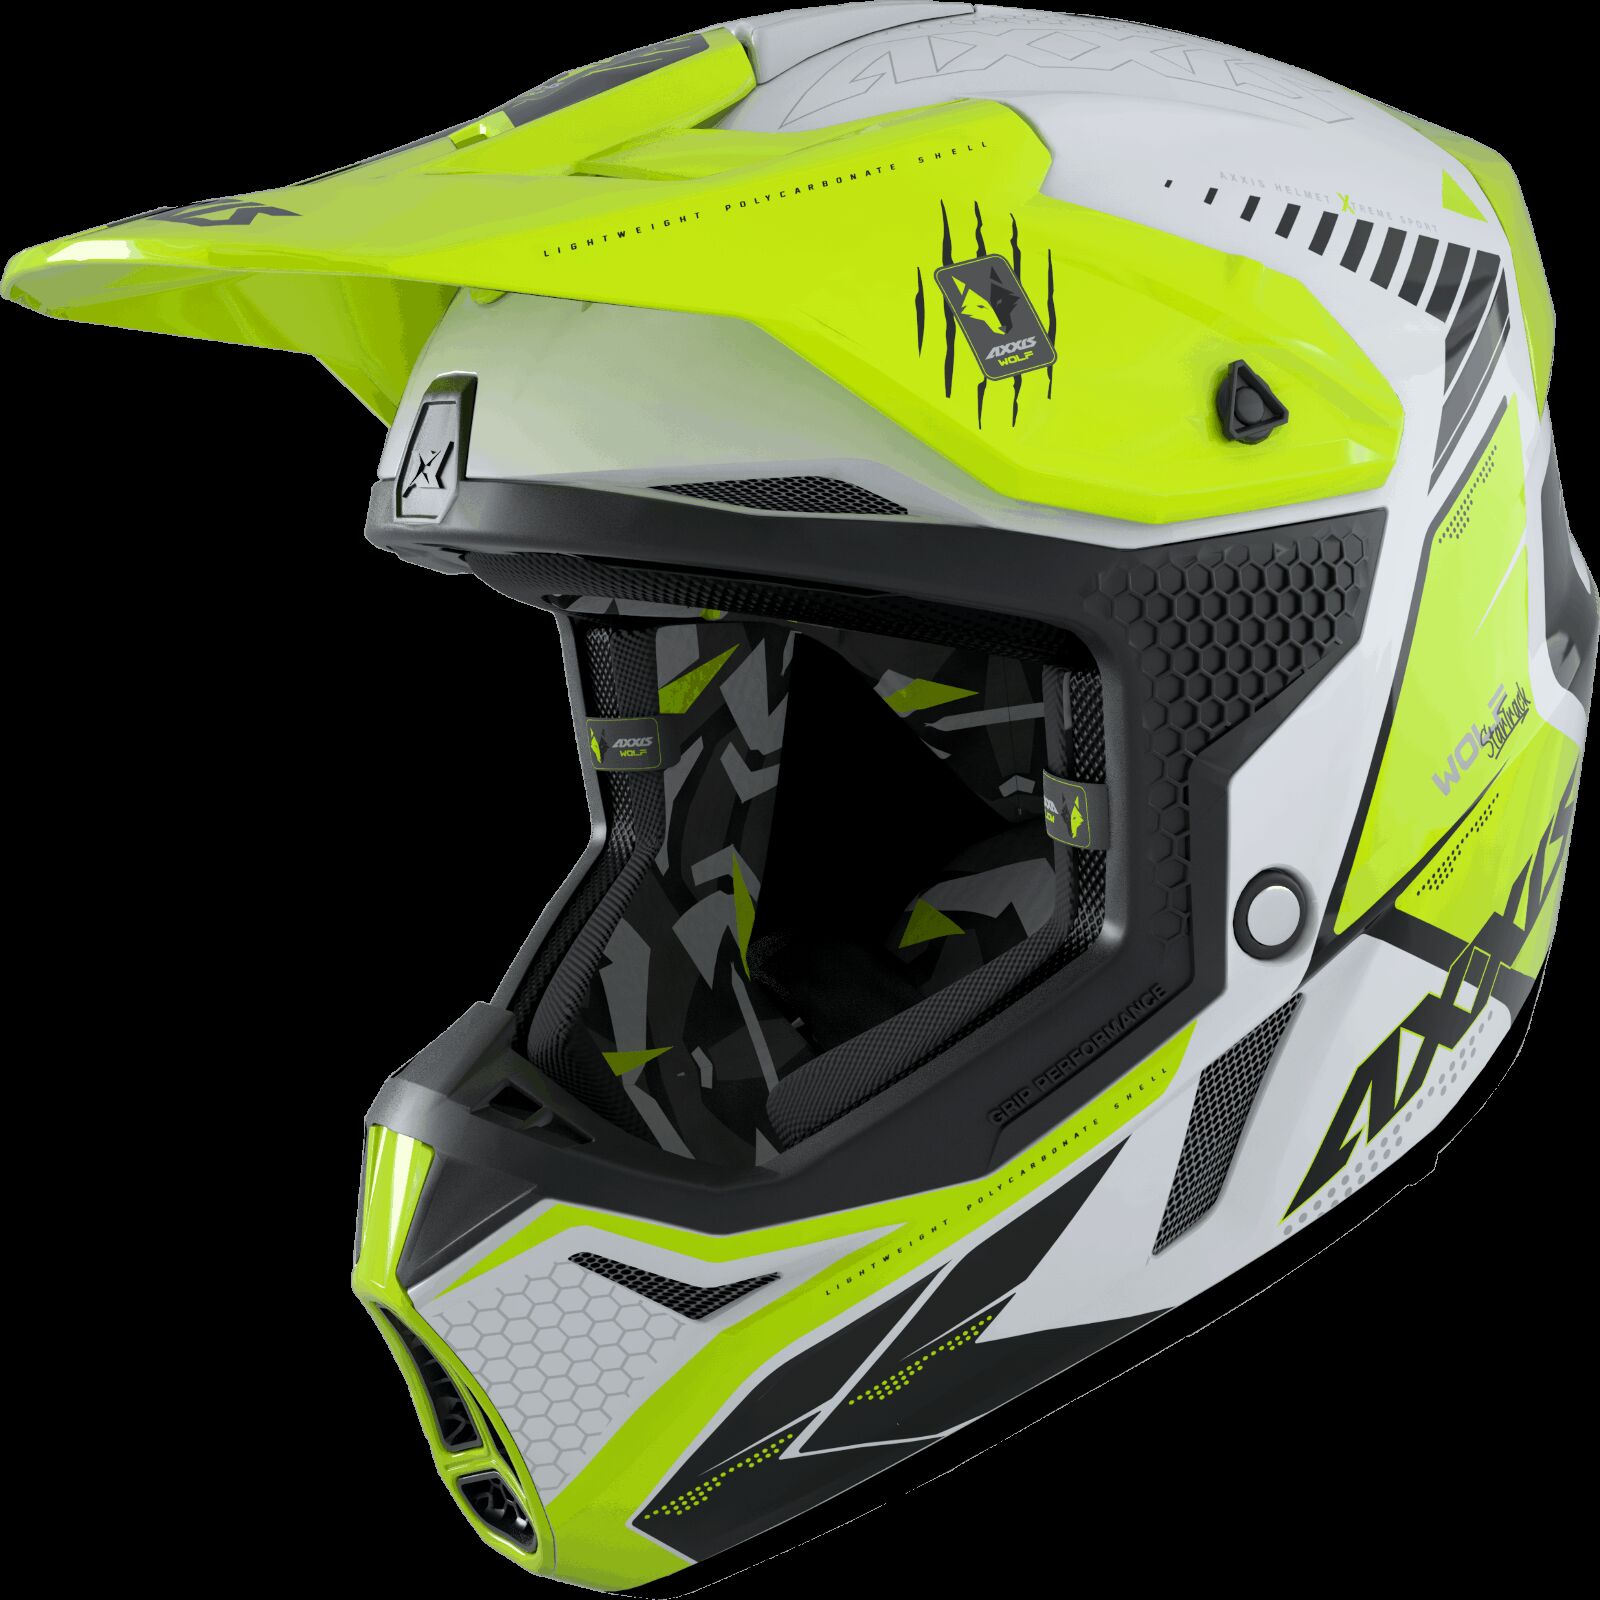 Obrázek produktu Motokrosová helma AXXIS WOLF ABS star track a3 lesklá fluor žlutá S 42587410304